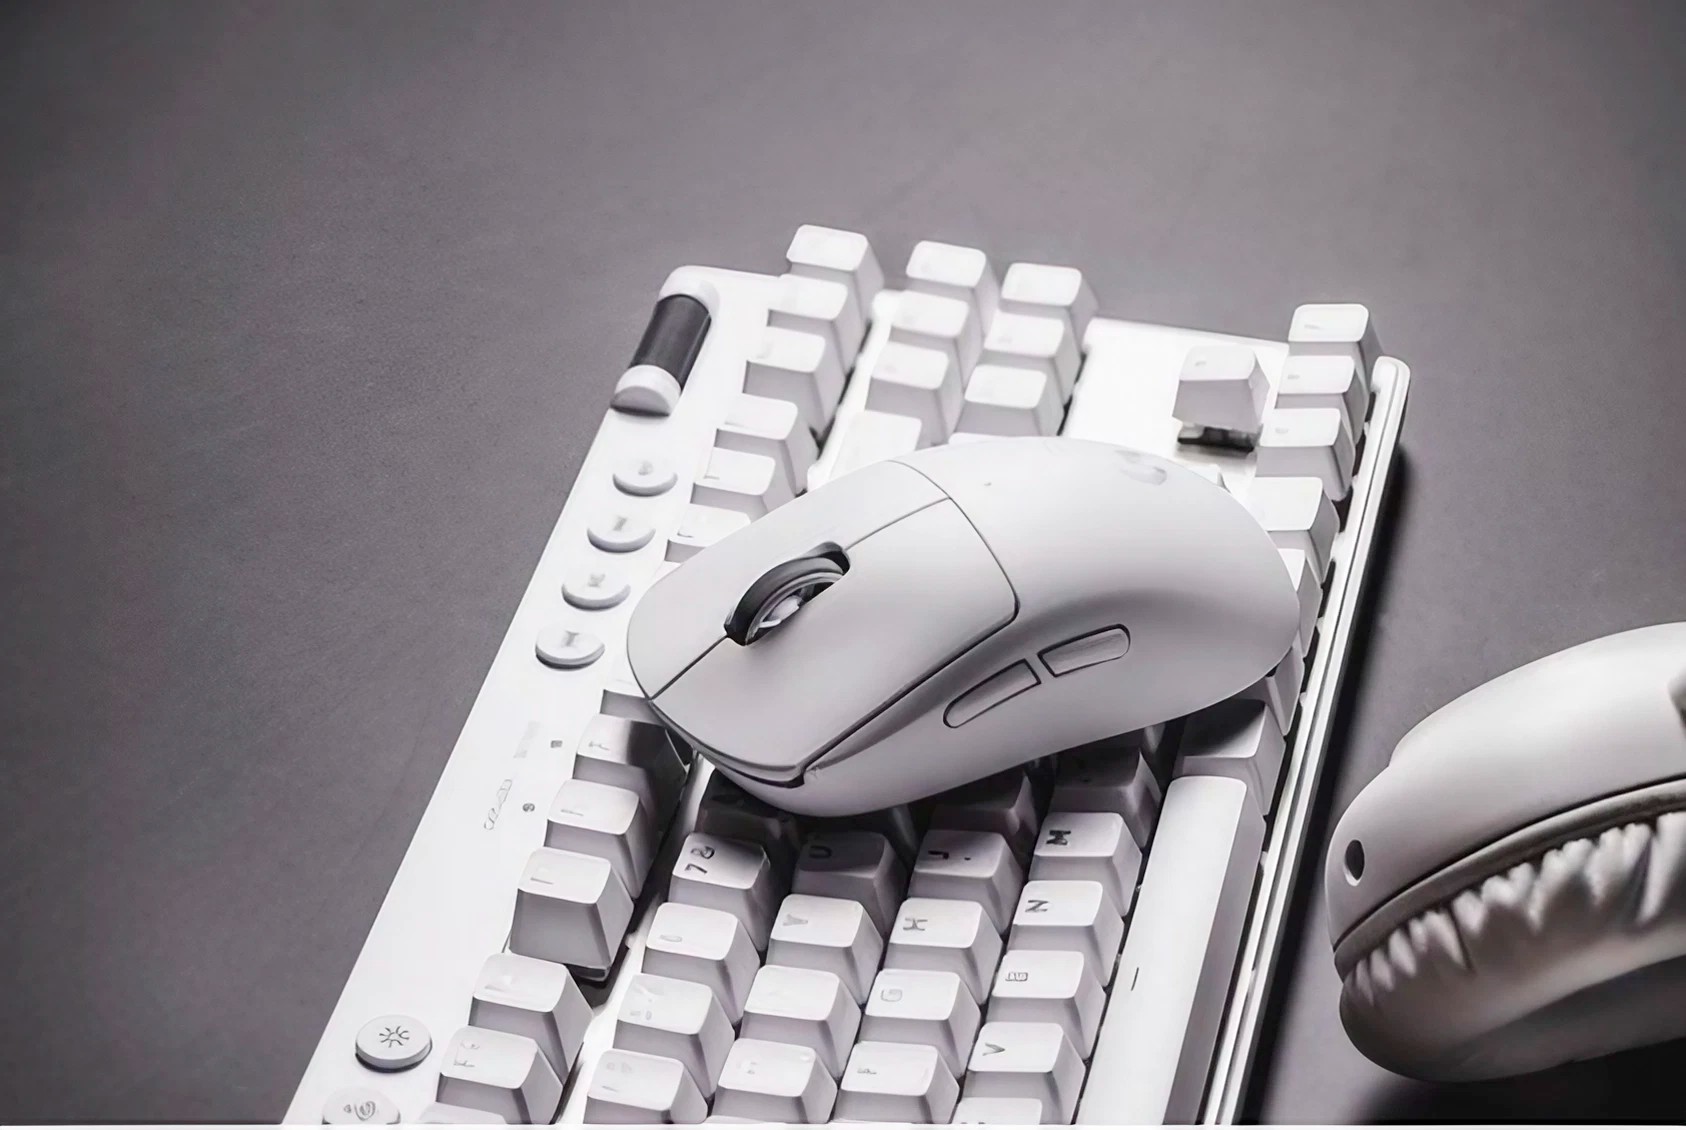 G915 TKL : Logitech dévoile une nouvelle version de son clavier sans fil  pour gamers 